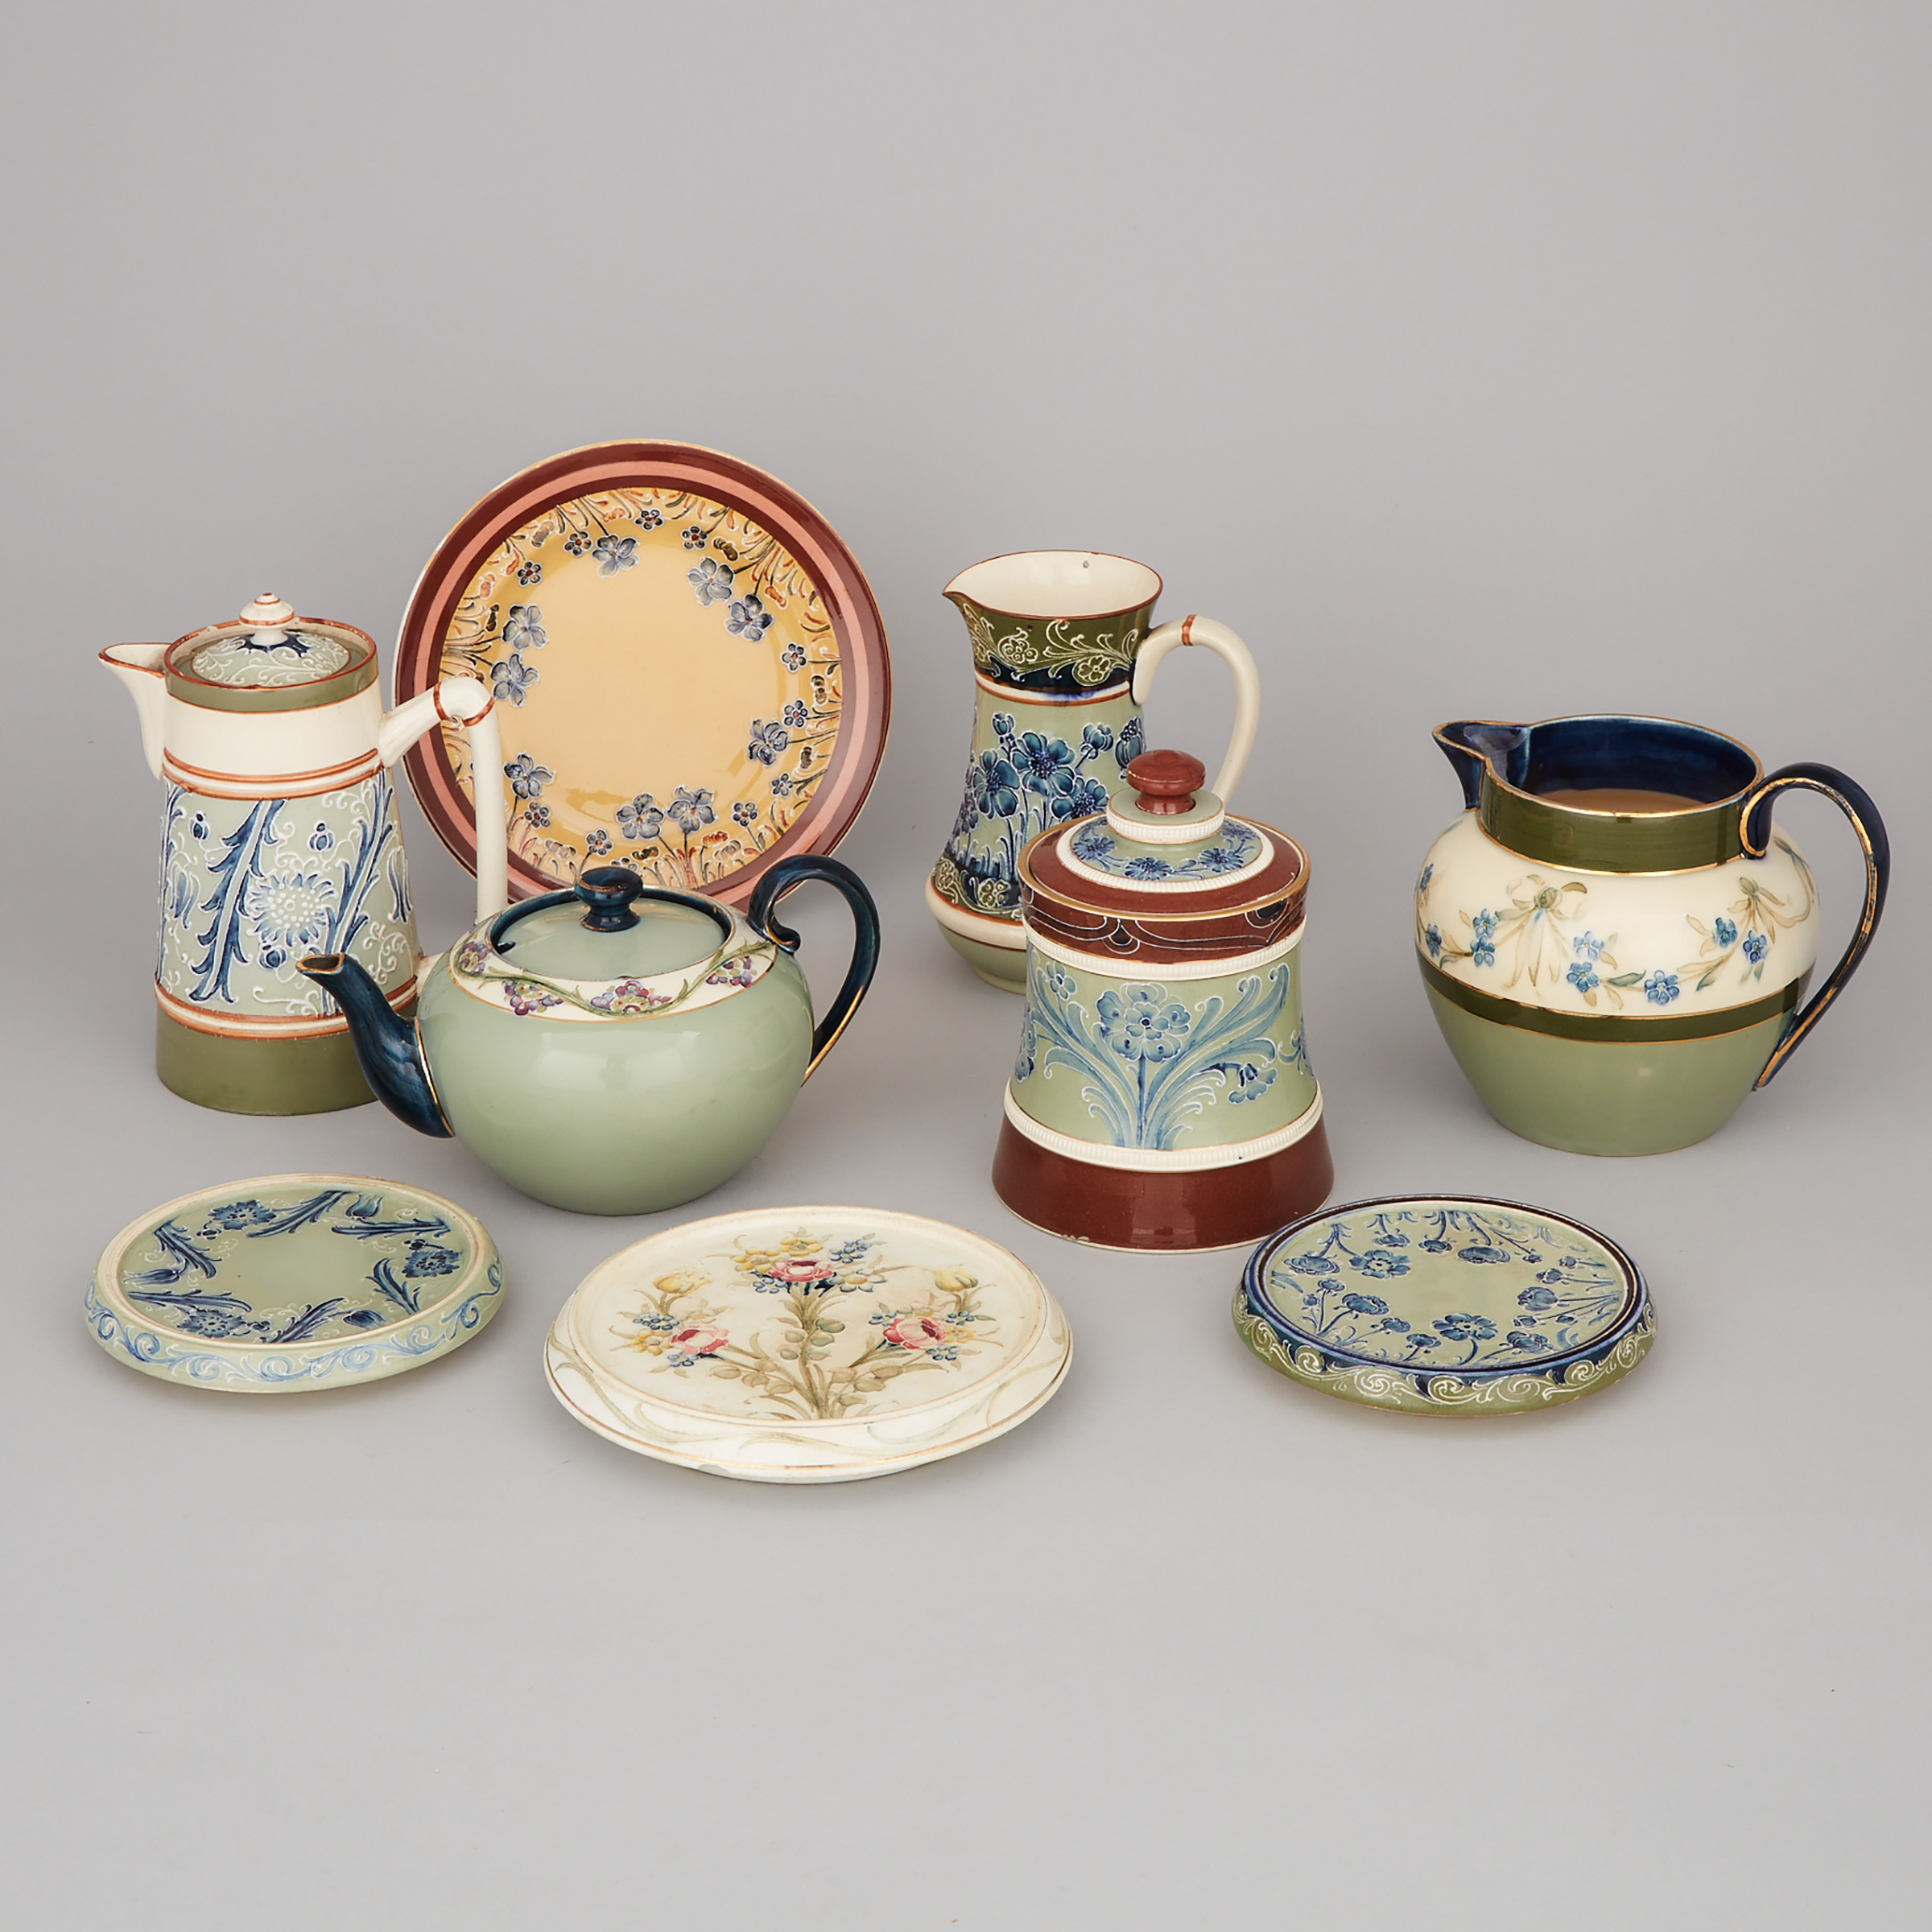 Group of Macintyre Moorcroft Tablewares, c.1900-10